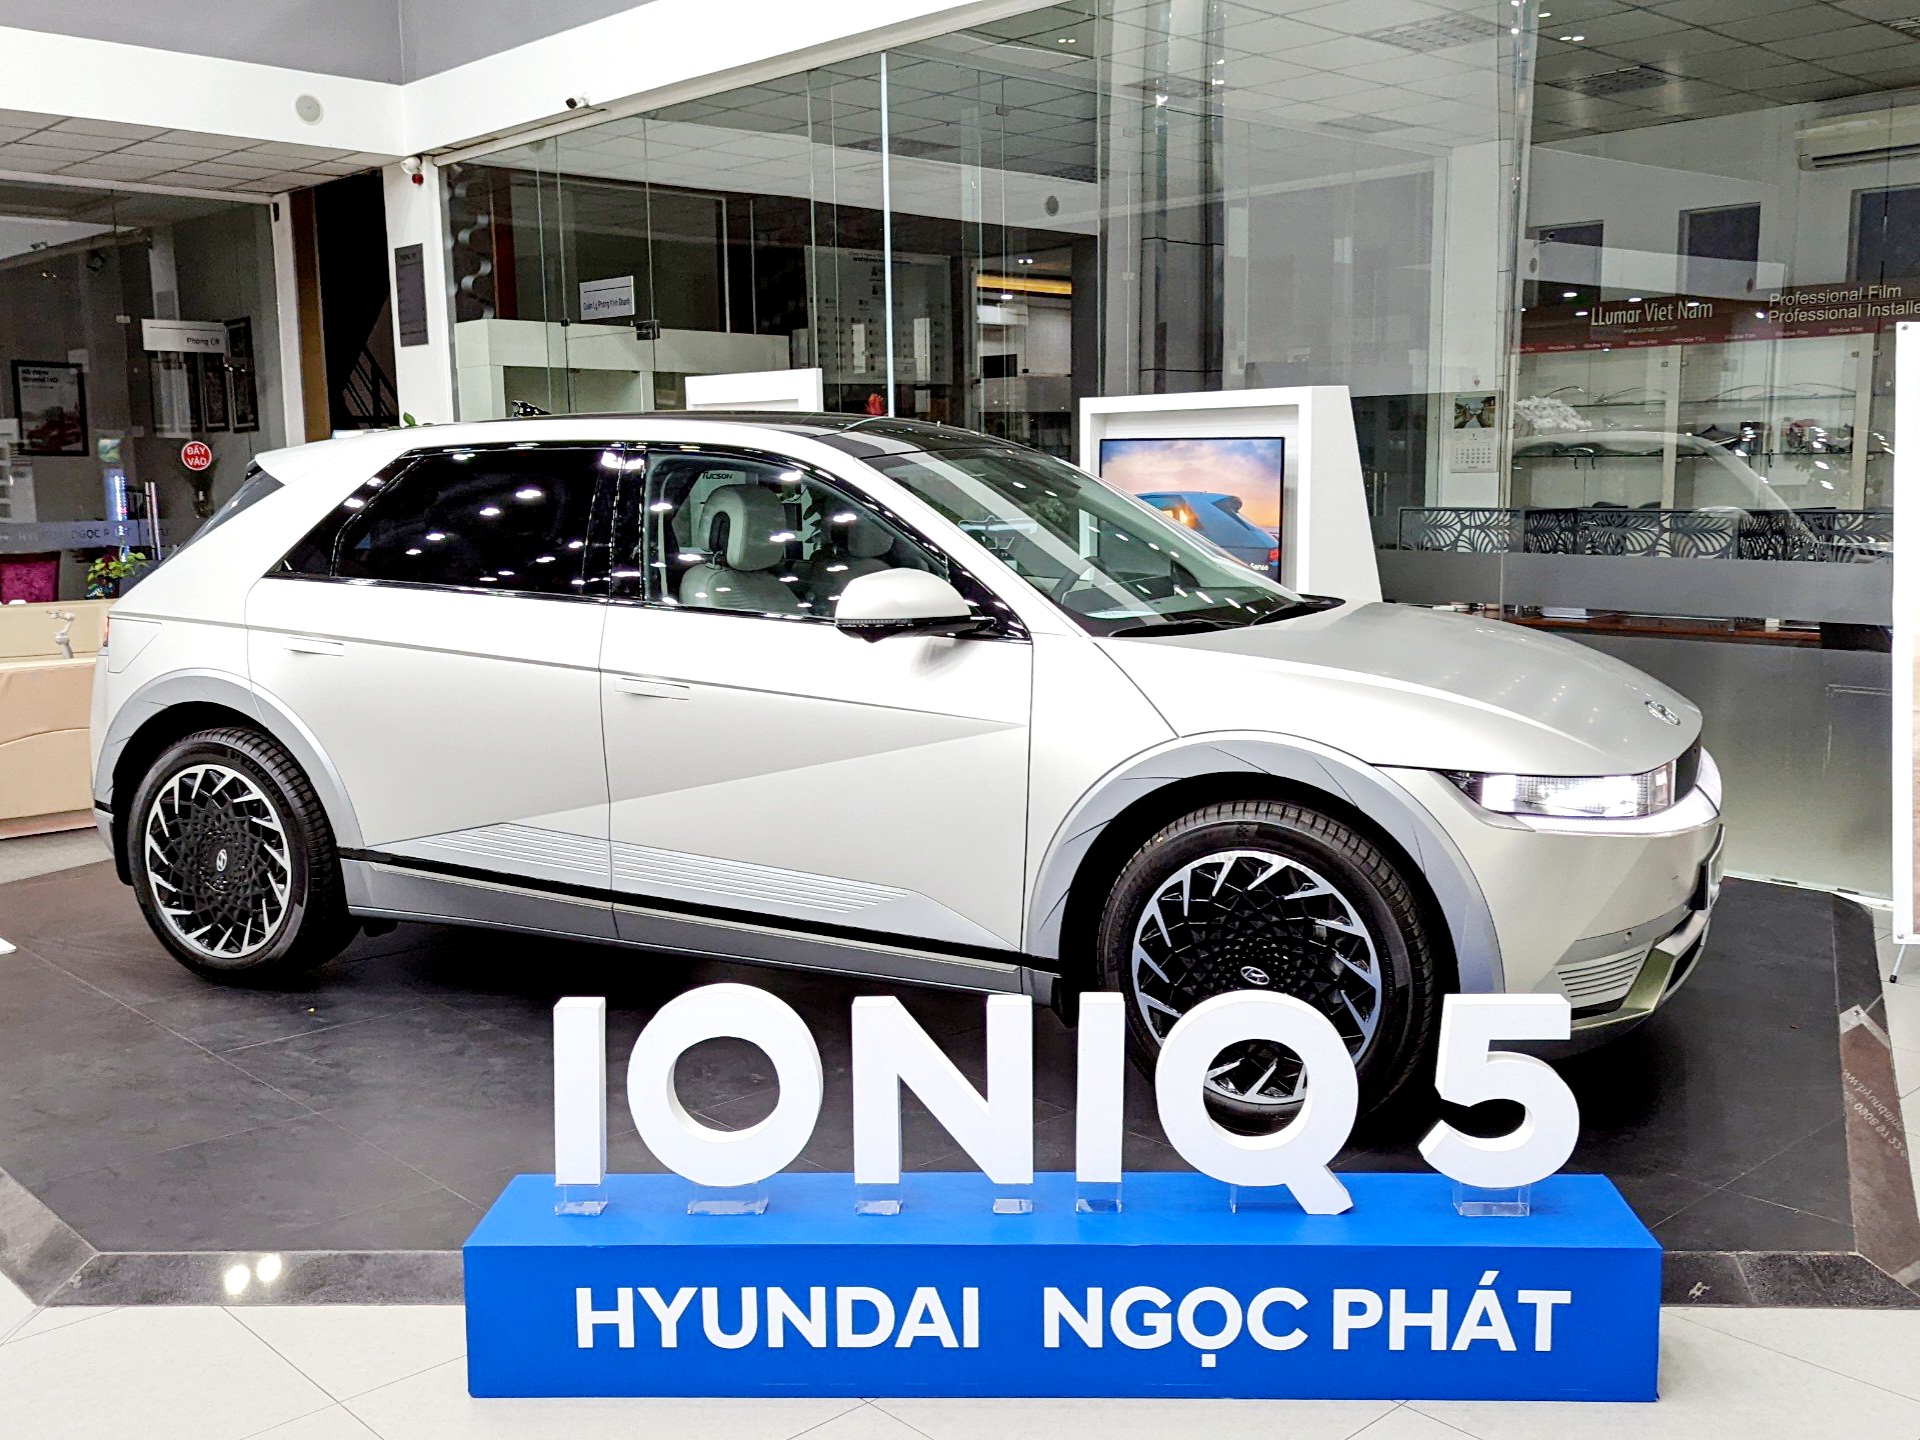 Bảng giá xe Hyundai Ioniq 5